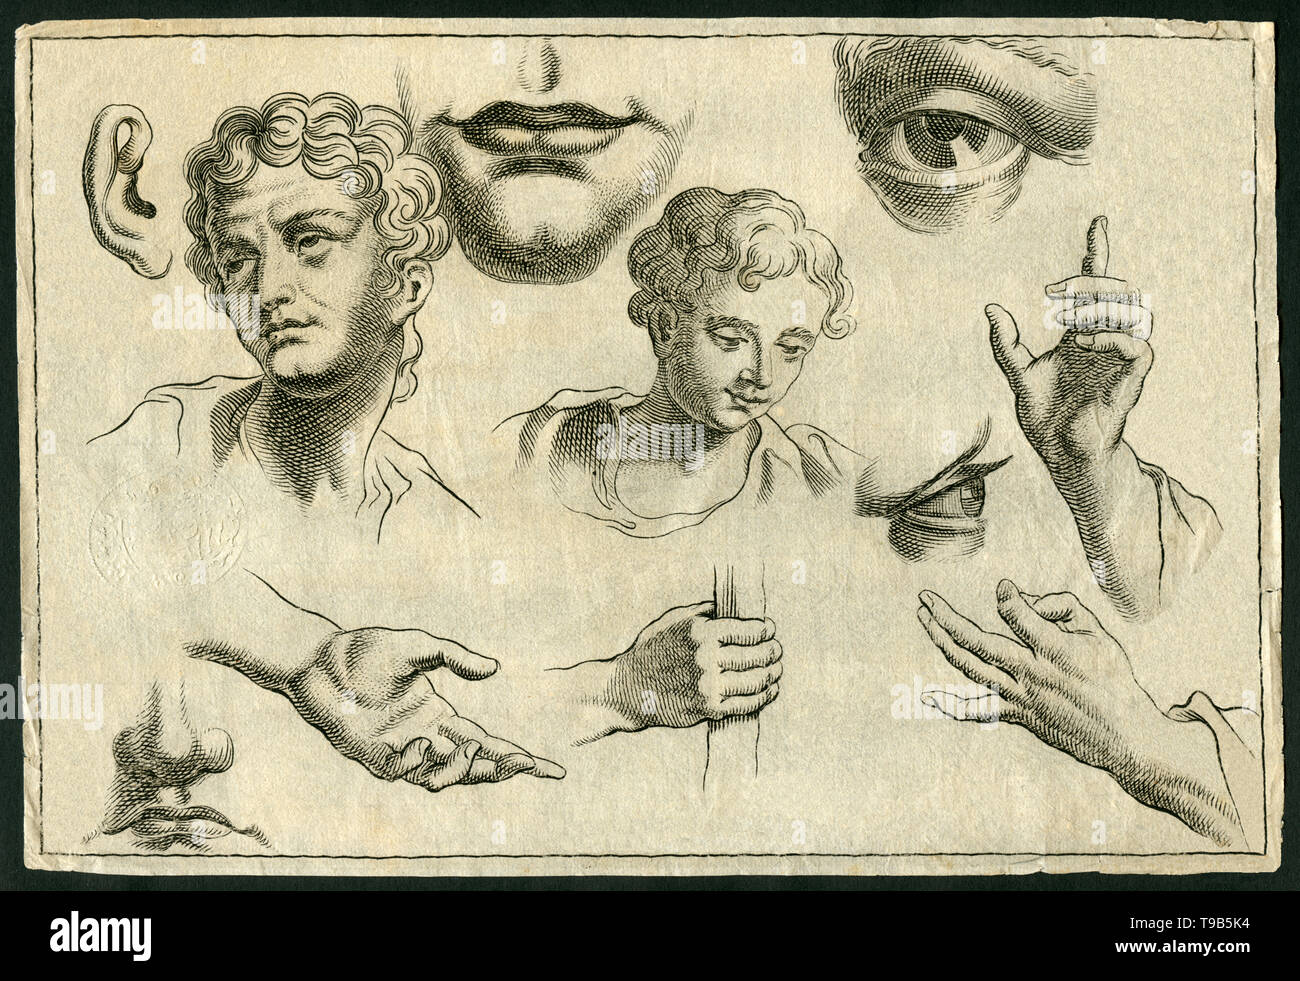 Europa, Deutschland, Medizin, Körperstudie Körperteile zeigt wie den Kopf, das Auge, das Ohr, den Mund und Hände , Kupferstich, um 1700, Künstler unbe Foto Stock